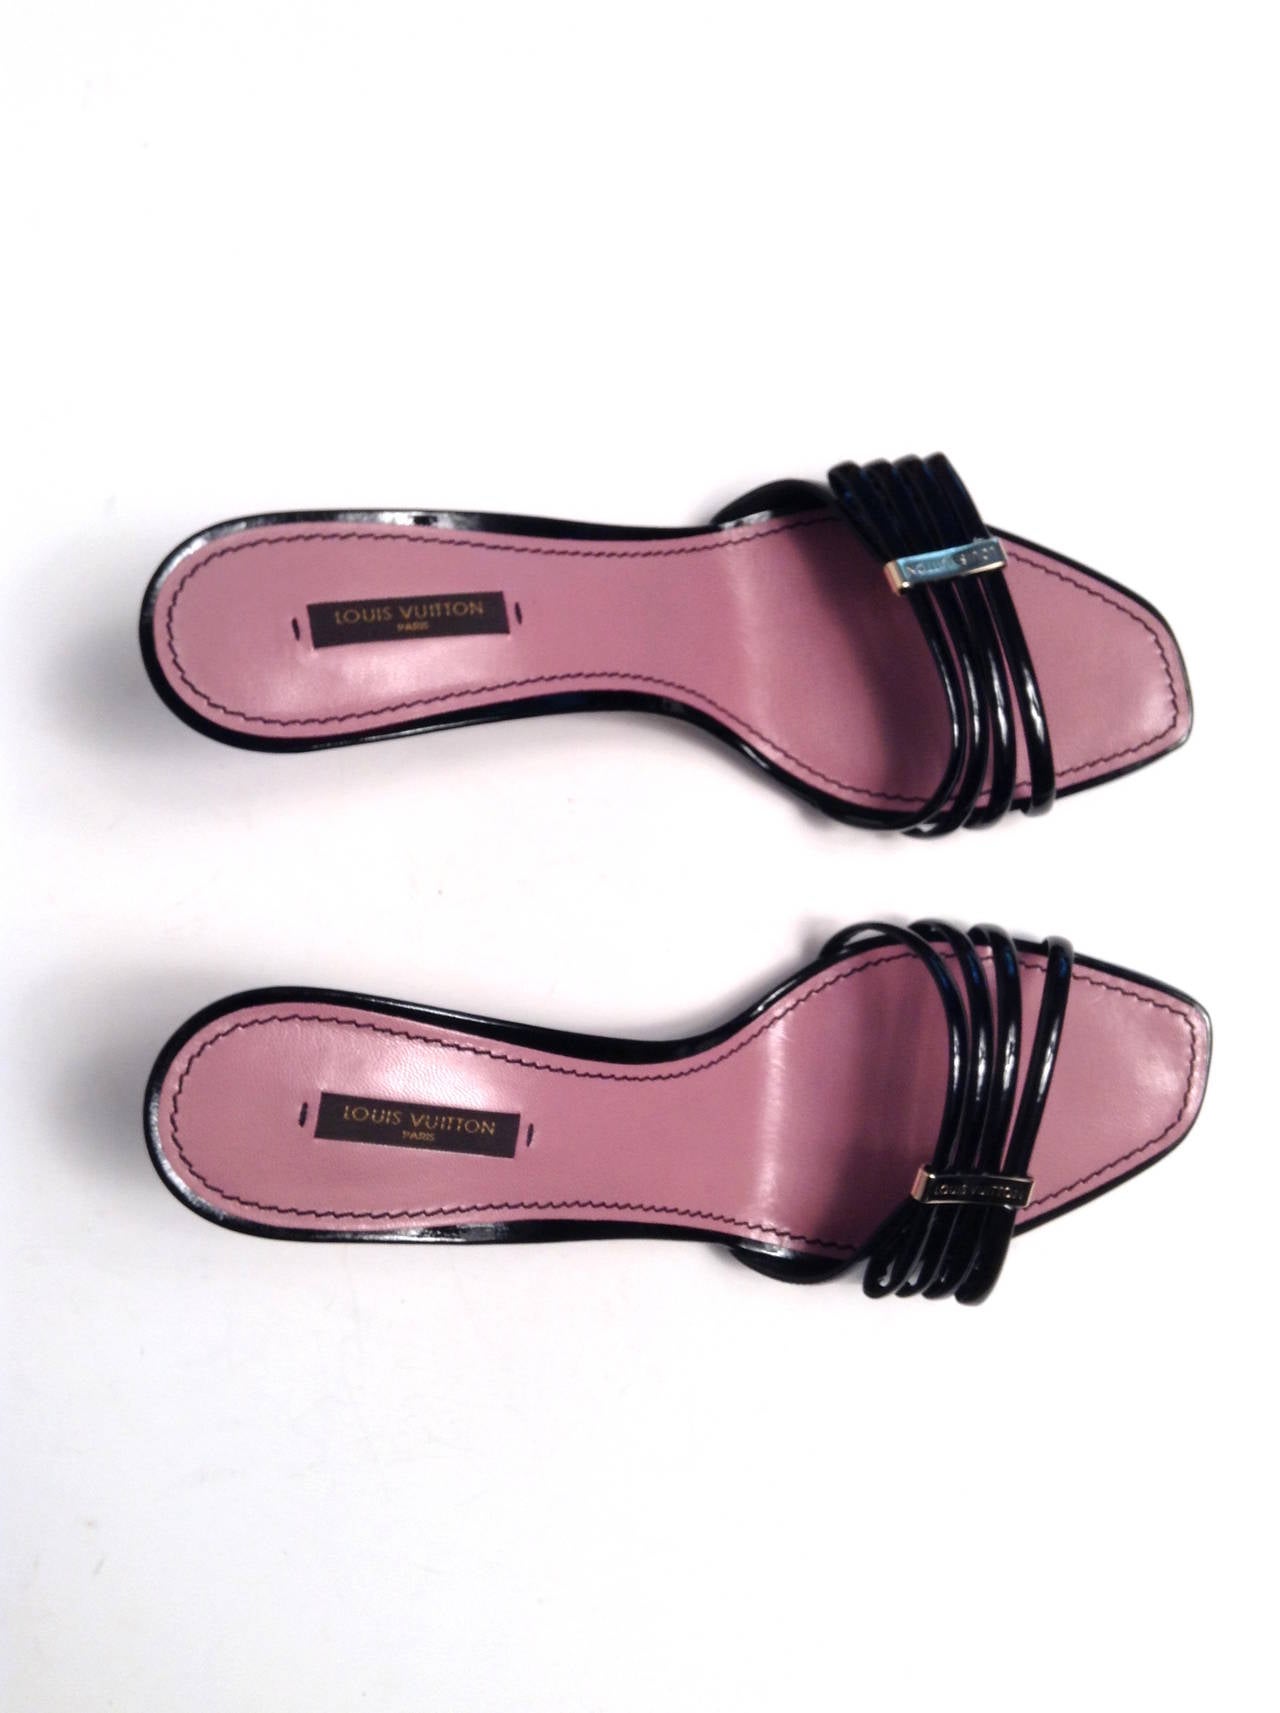 Louis Vuitton Black Patent Cherry Open Toe Mule Size 39/8 For Sale 3